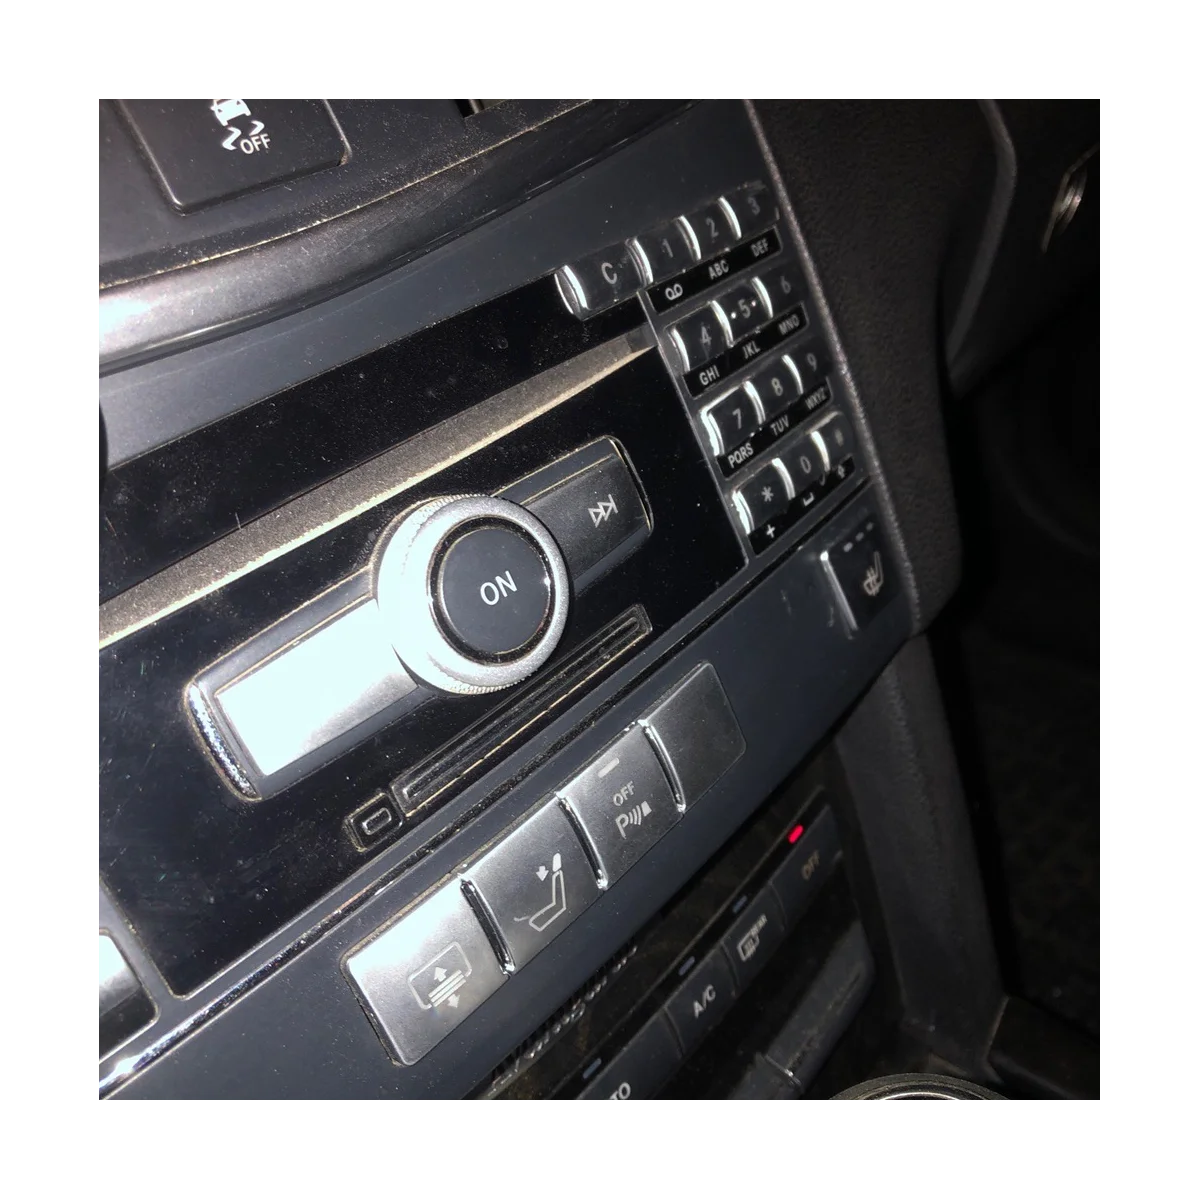 Car Center Console CD Мультимедийная кнопка Крышка рамки Наклейка для Mercedes Benz E Class W212 2010-2011 (серебристый) - 4